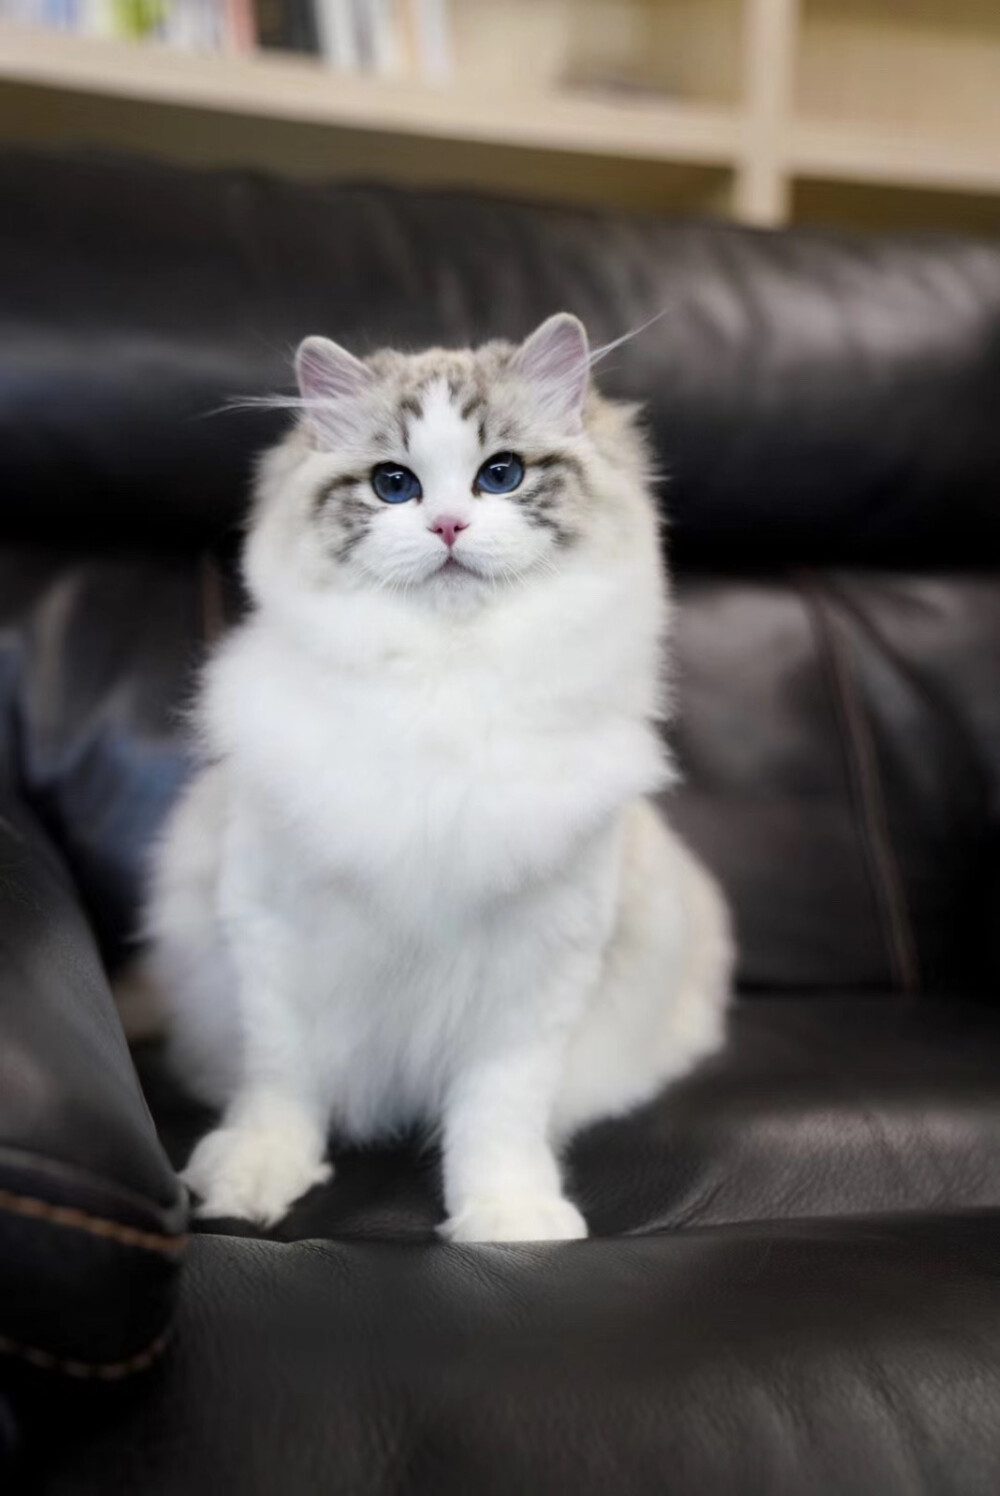 海豹山猫纹双色布偶猫,还清雅秀丽带有一丝灵气!